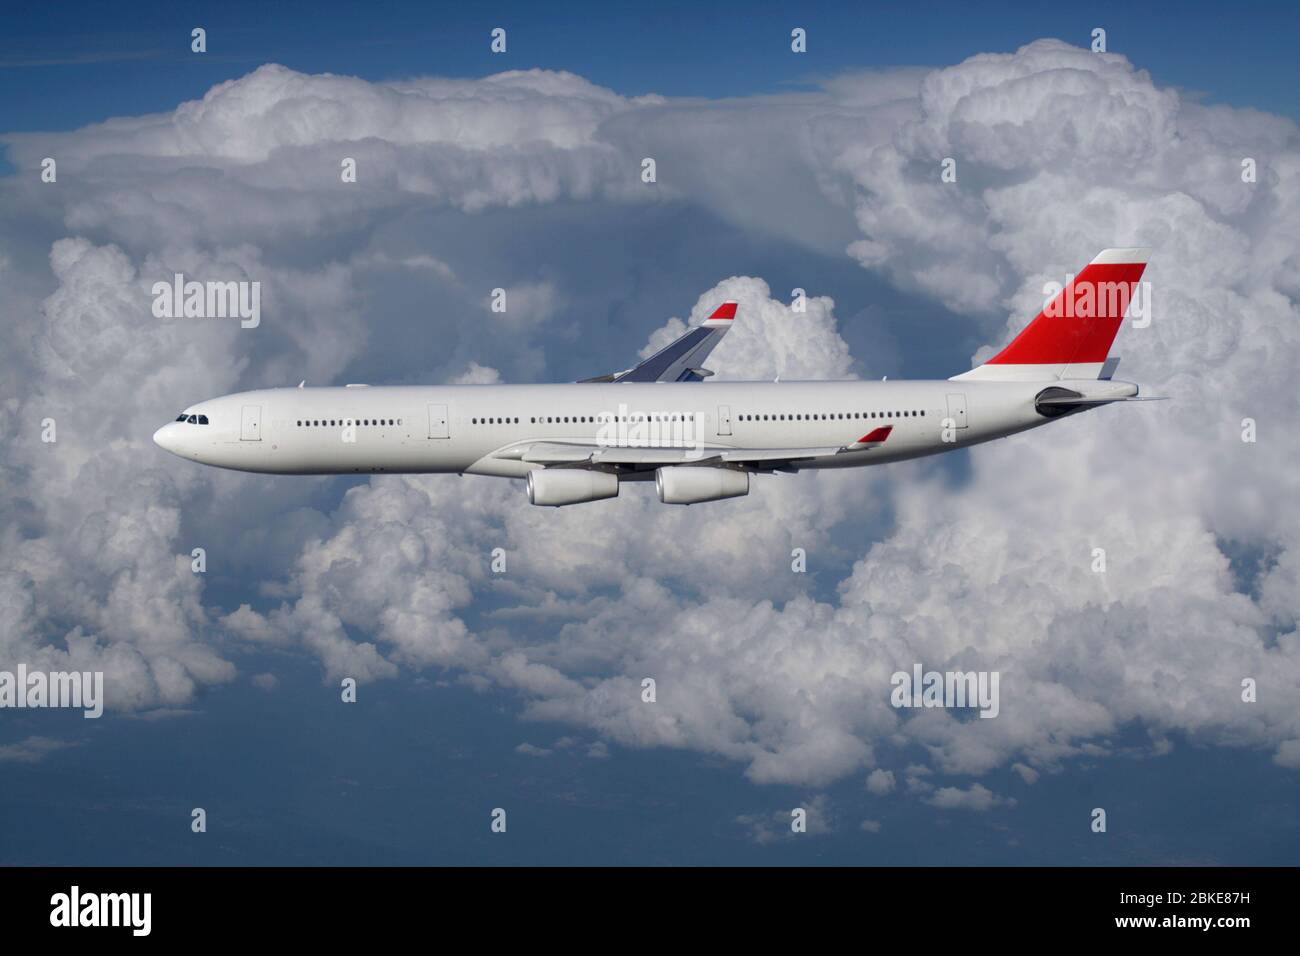 Flugreisen. Langstreckenflugzeug für Passagierflüge, das auf einem kommerziellen Flug in großer Höhe gegen einen bewölkten Himmel fliegt. Flugzeuge und Flüge. Stockfoto